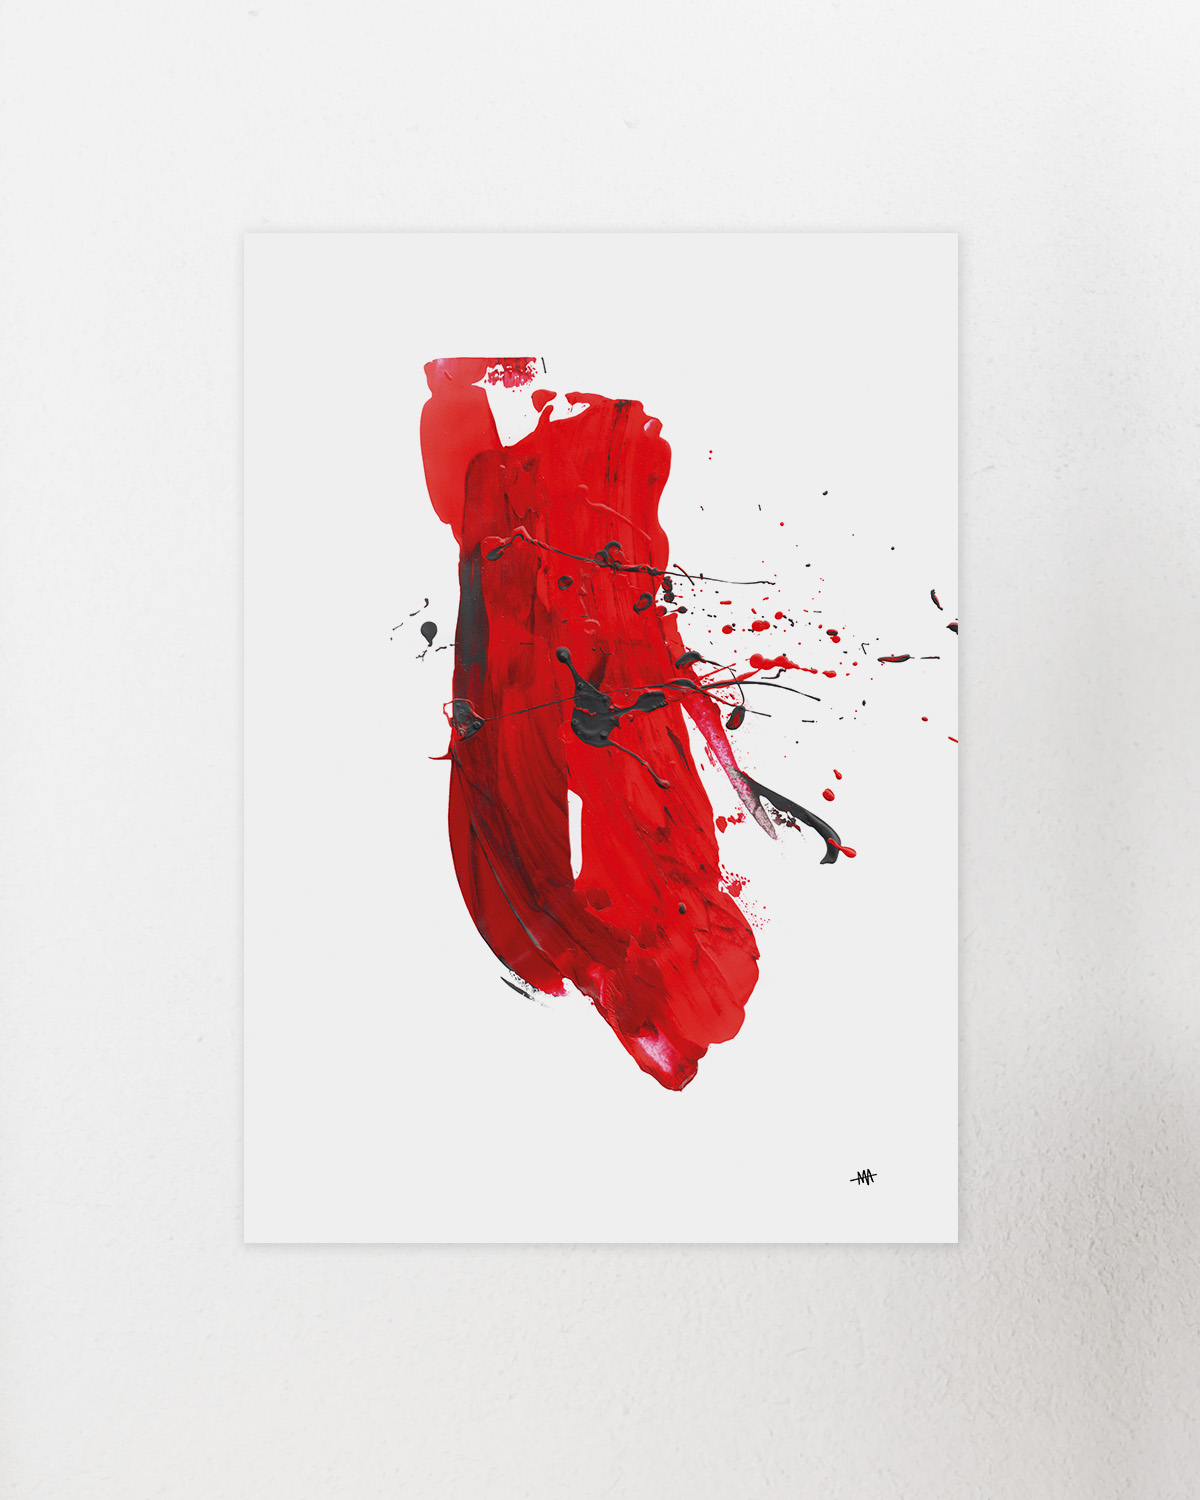 Exklusiver Kunstrdruck von vandrangl. redSquashi basiert auf einer Acryl Mischtechnik im modern minimalistischen Stil.